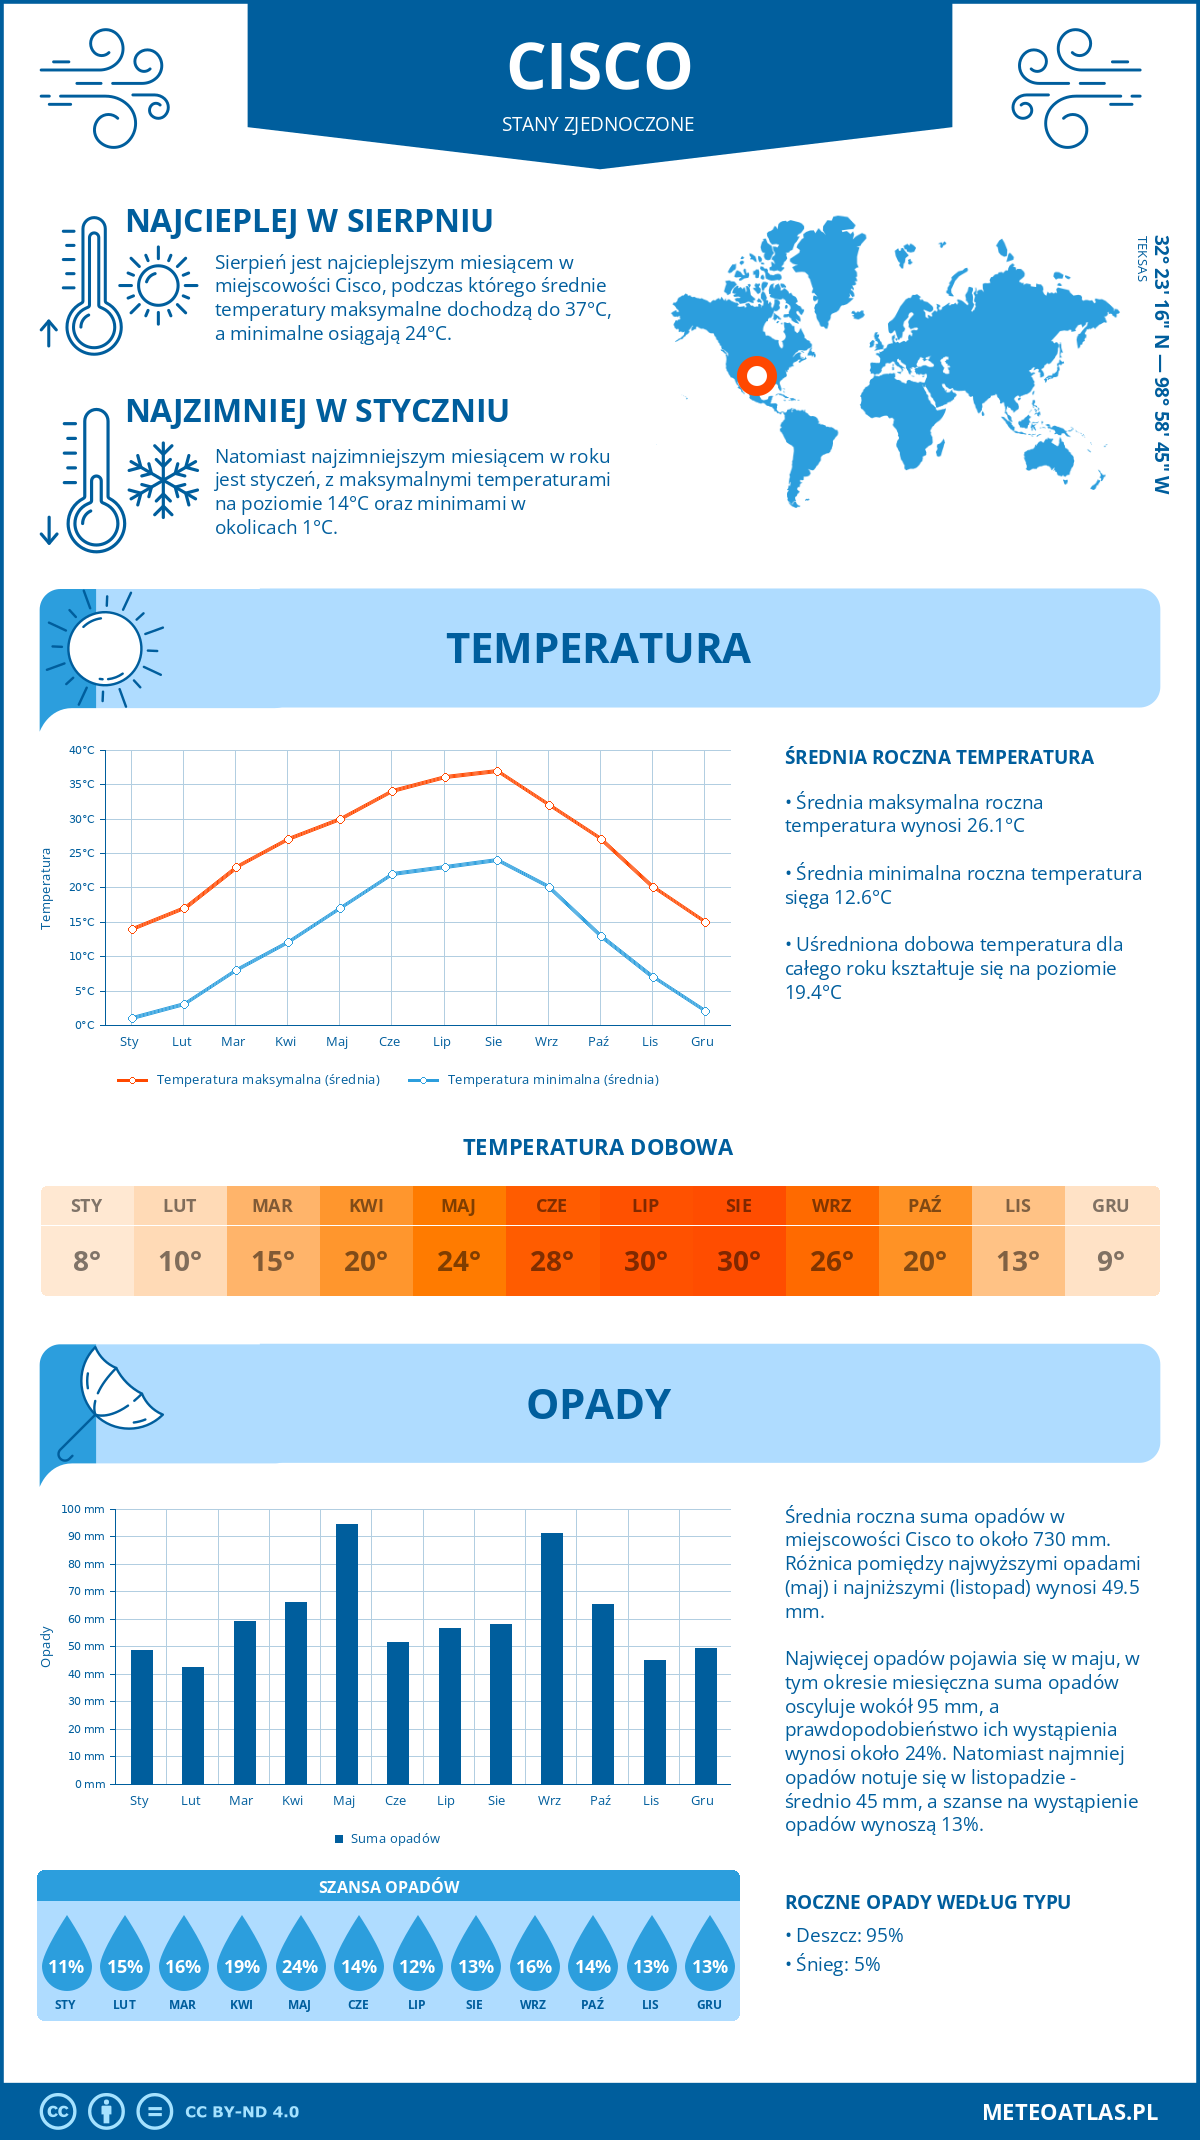 Pogoda Cisco (Stany Zjednoczone). Temperatura oraz opady.